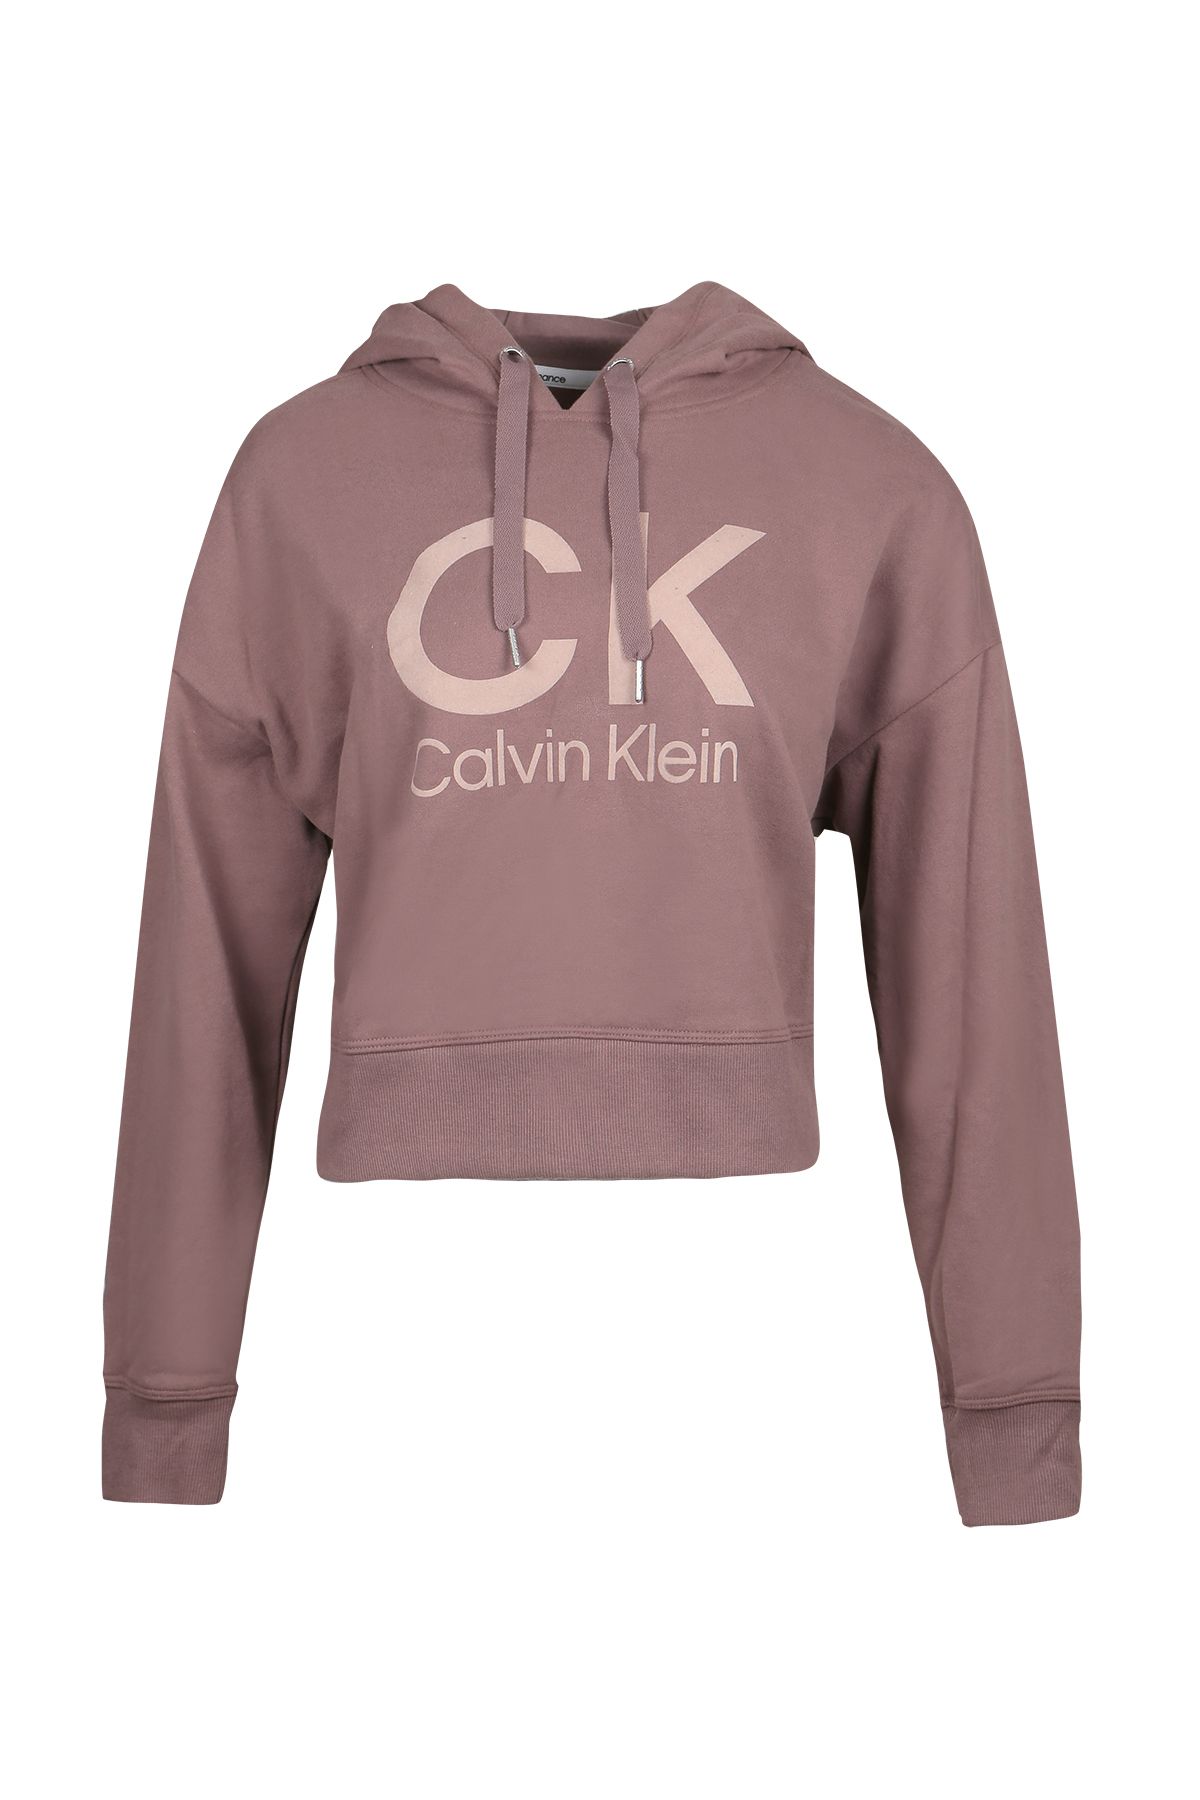 Calvin Klein Kadın Sweatshırt Pf2t2292-0mo